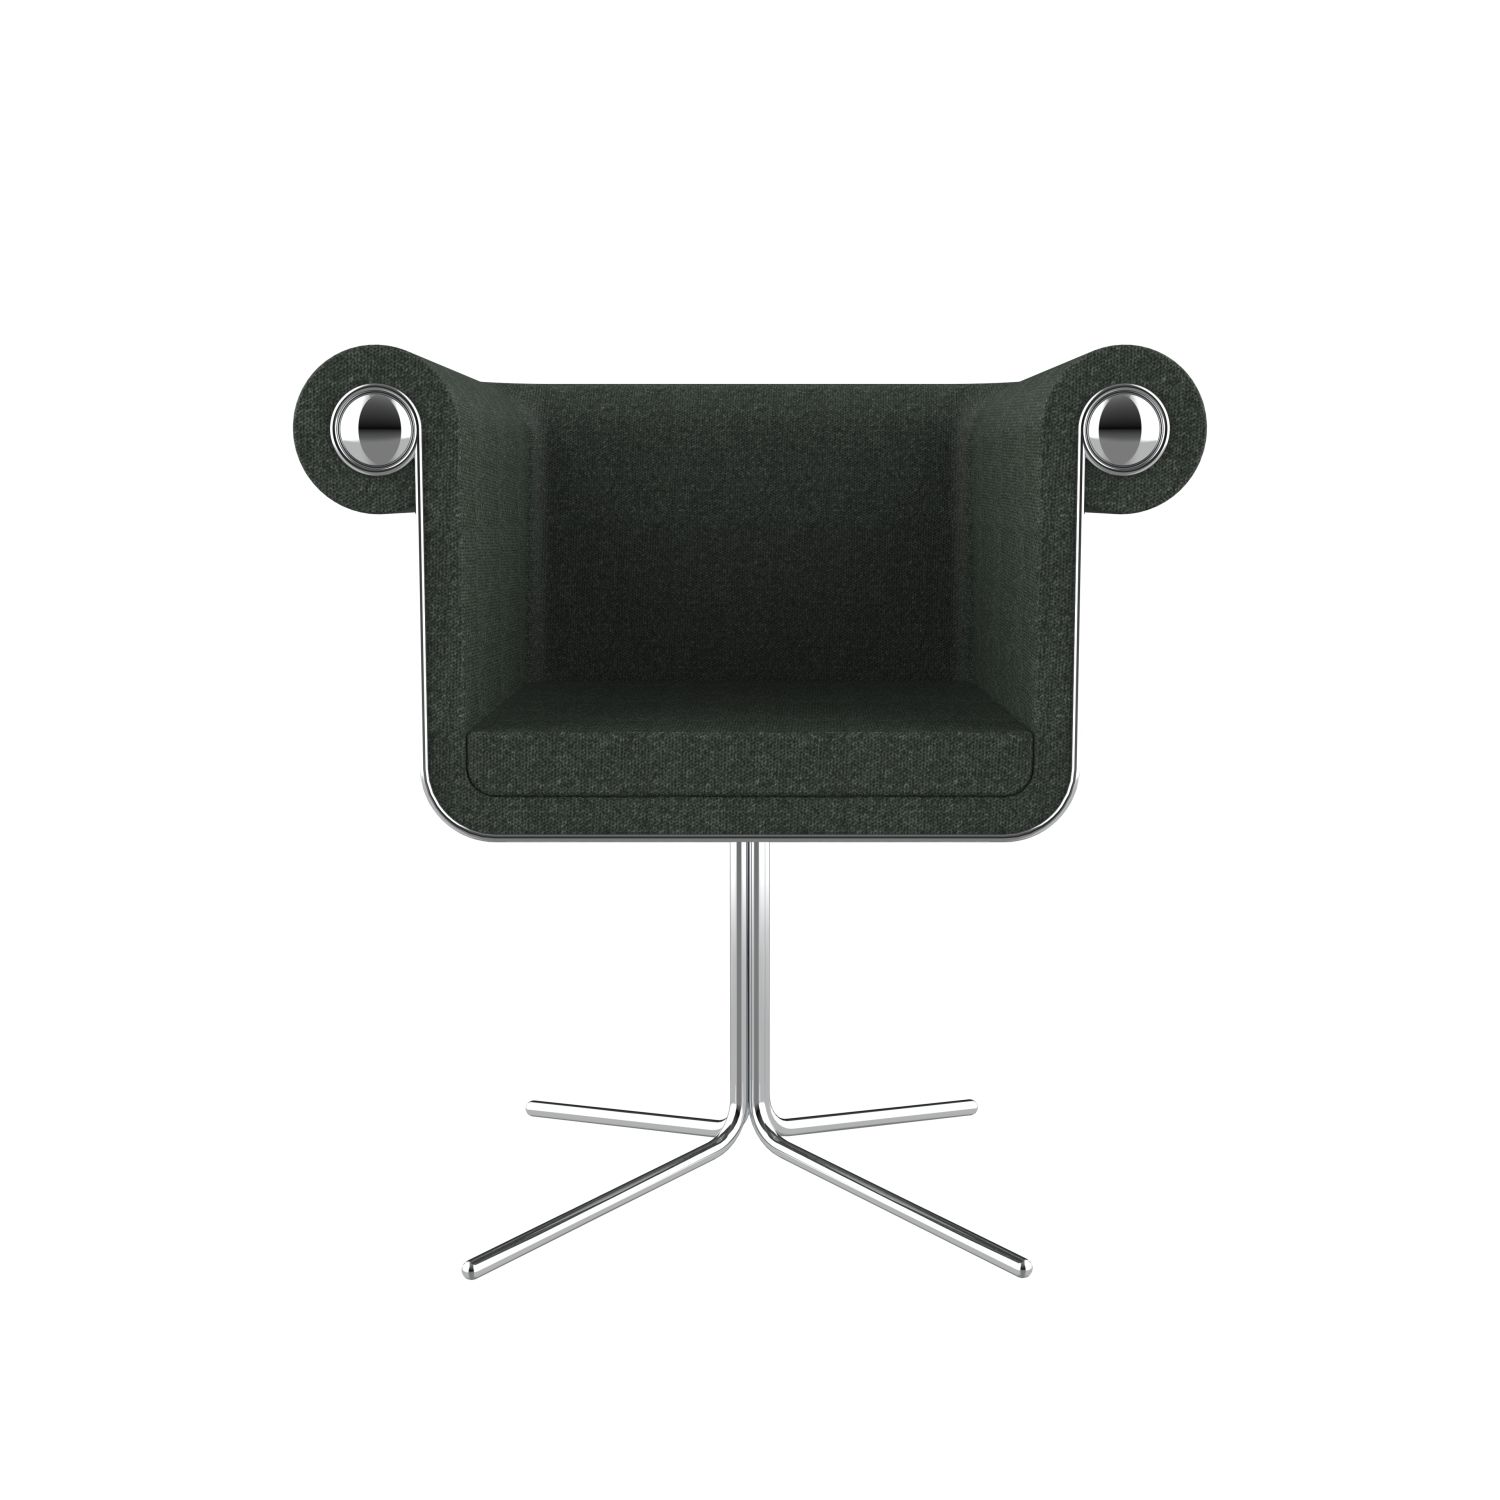 lensvelt baranowitz kronenberg new chesterfield chair moss summer green 38 price level 2 glossy chrome hard leg ends